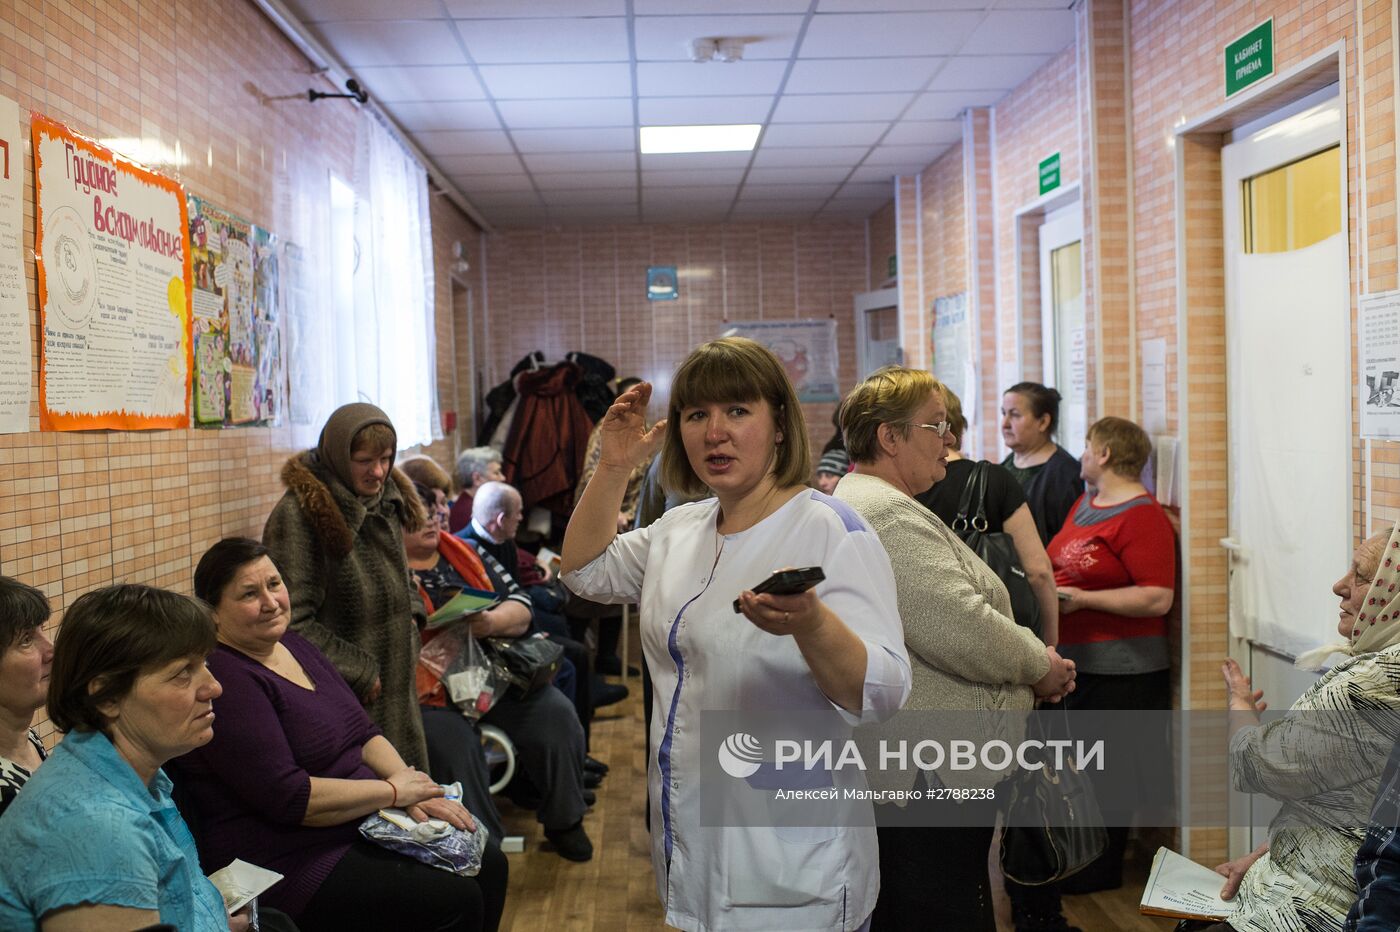 Выездная бригада врачей Омского Клинического медико-хирургического центра в селе Литковка Омской области